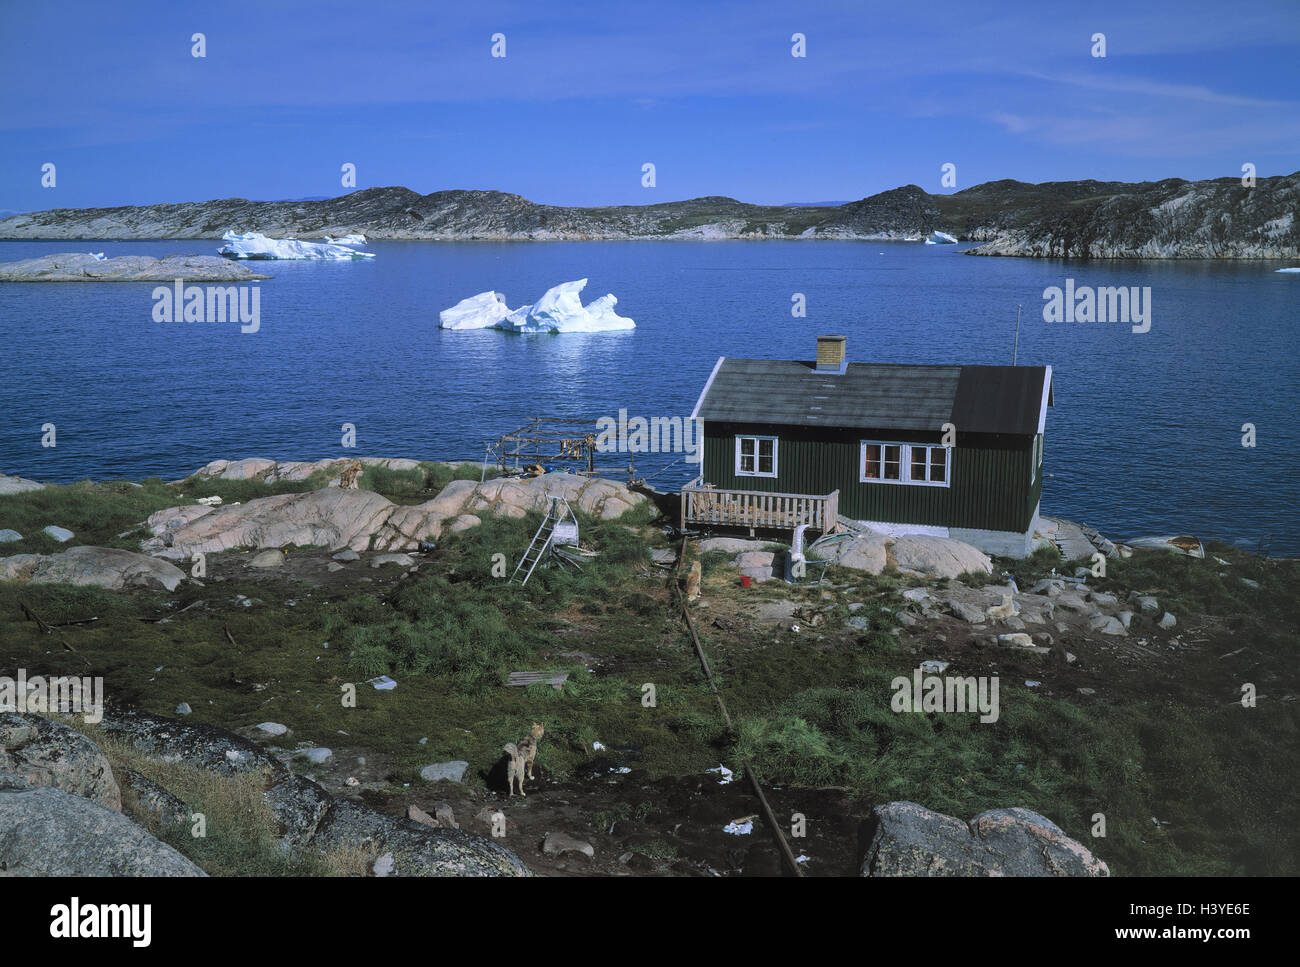 Le Danemark, le Groenland, mer, maison Jakobshavn ville Inuit, l'ouest du Groenland, place, vue, pêche maison, maison d'habitation, style architectural, en règle générale, l'autre, de l'Atlantique, l'océan Atlantique, les icebergs, banquises, Banque D'Images